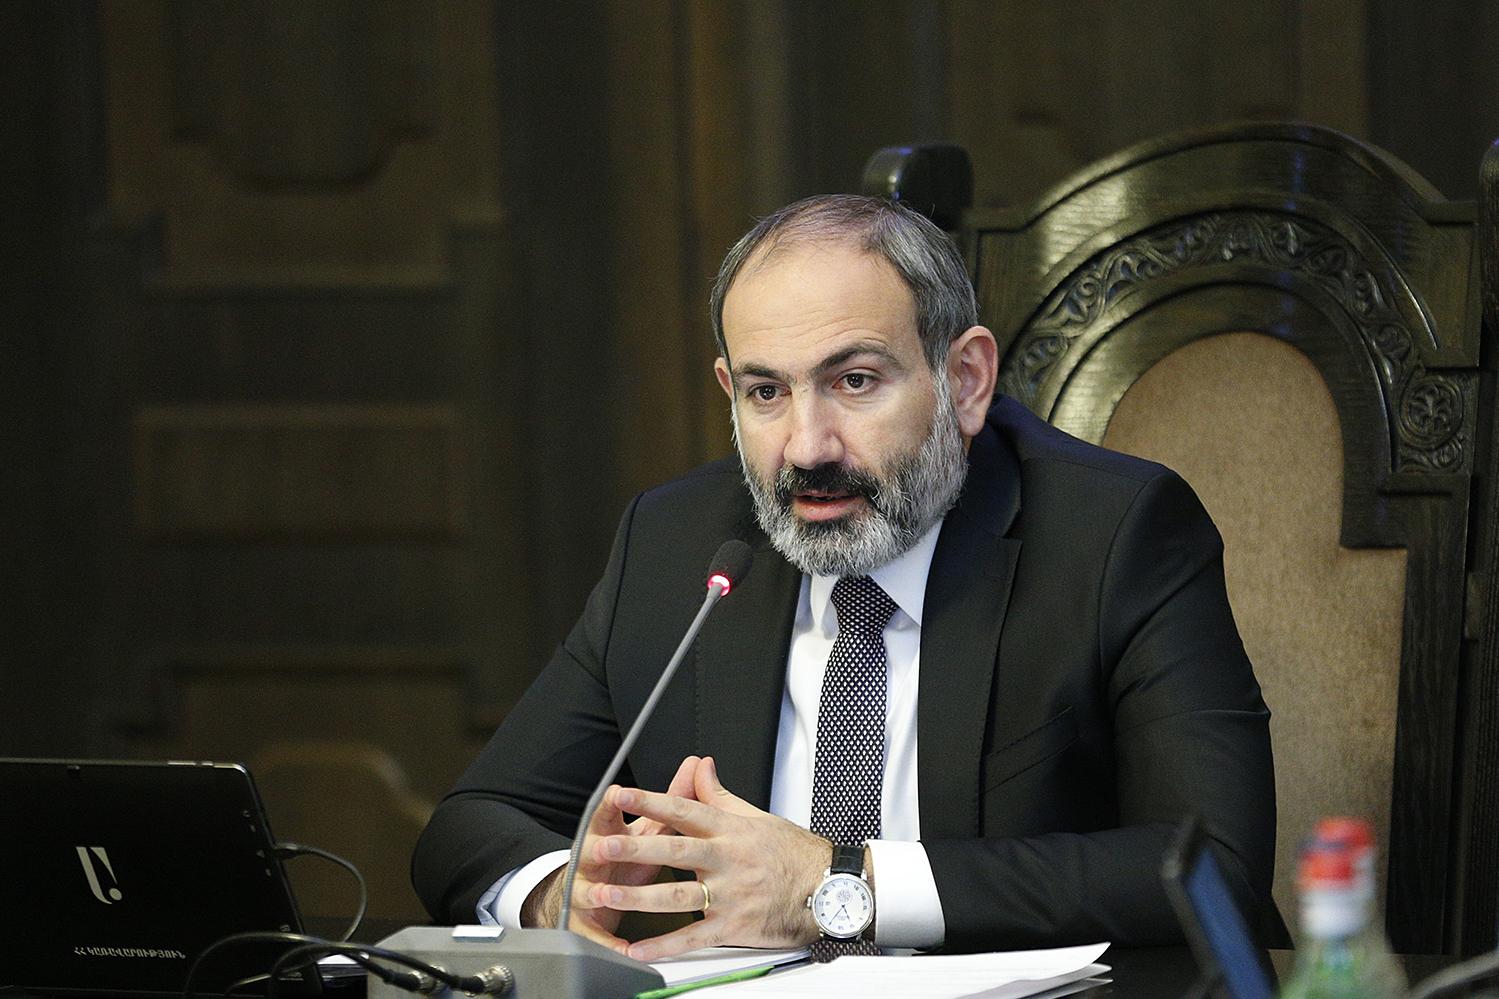 СМИ в Армении сейчас свободны, как никогда ранее – премьер